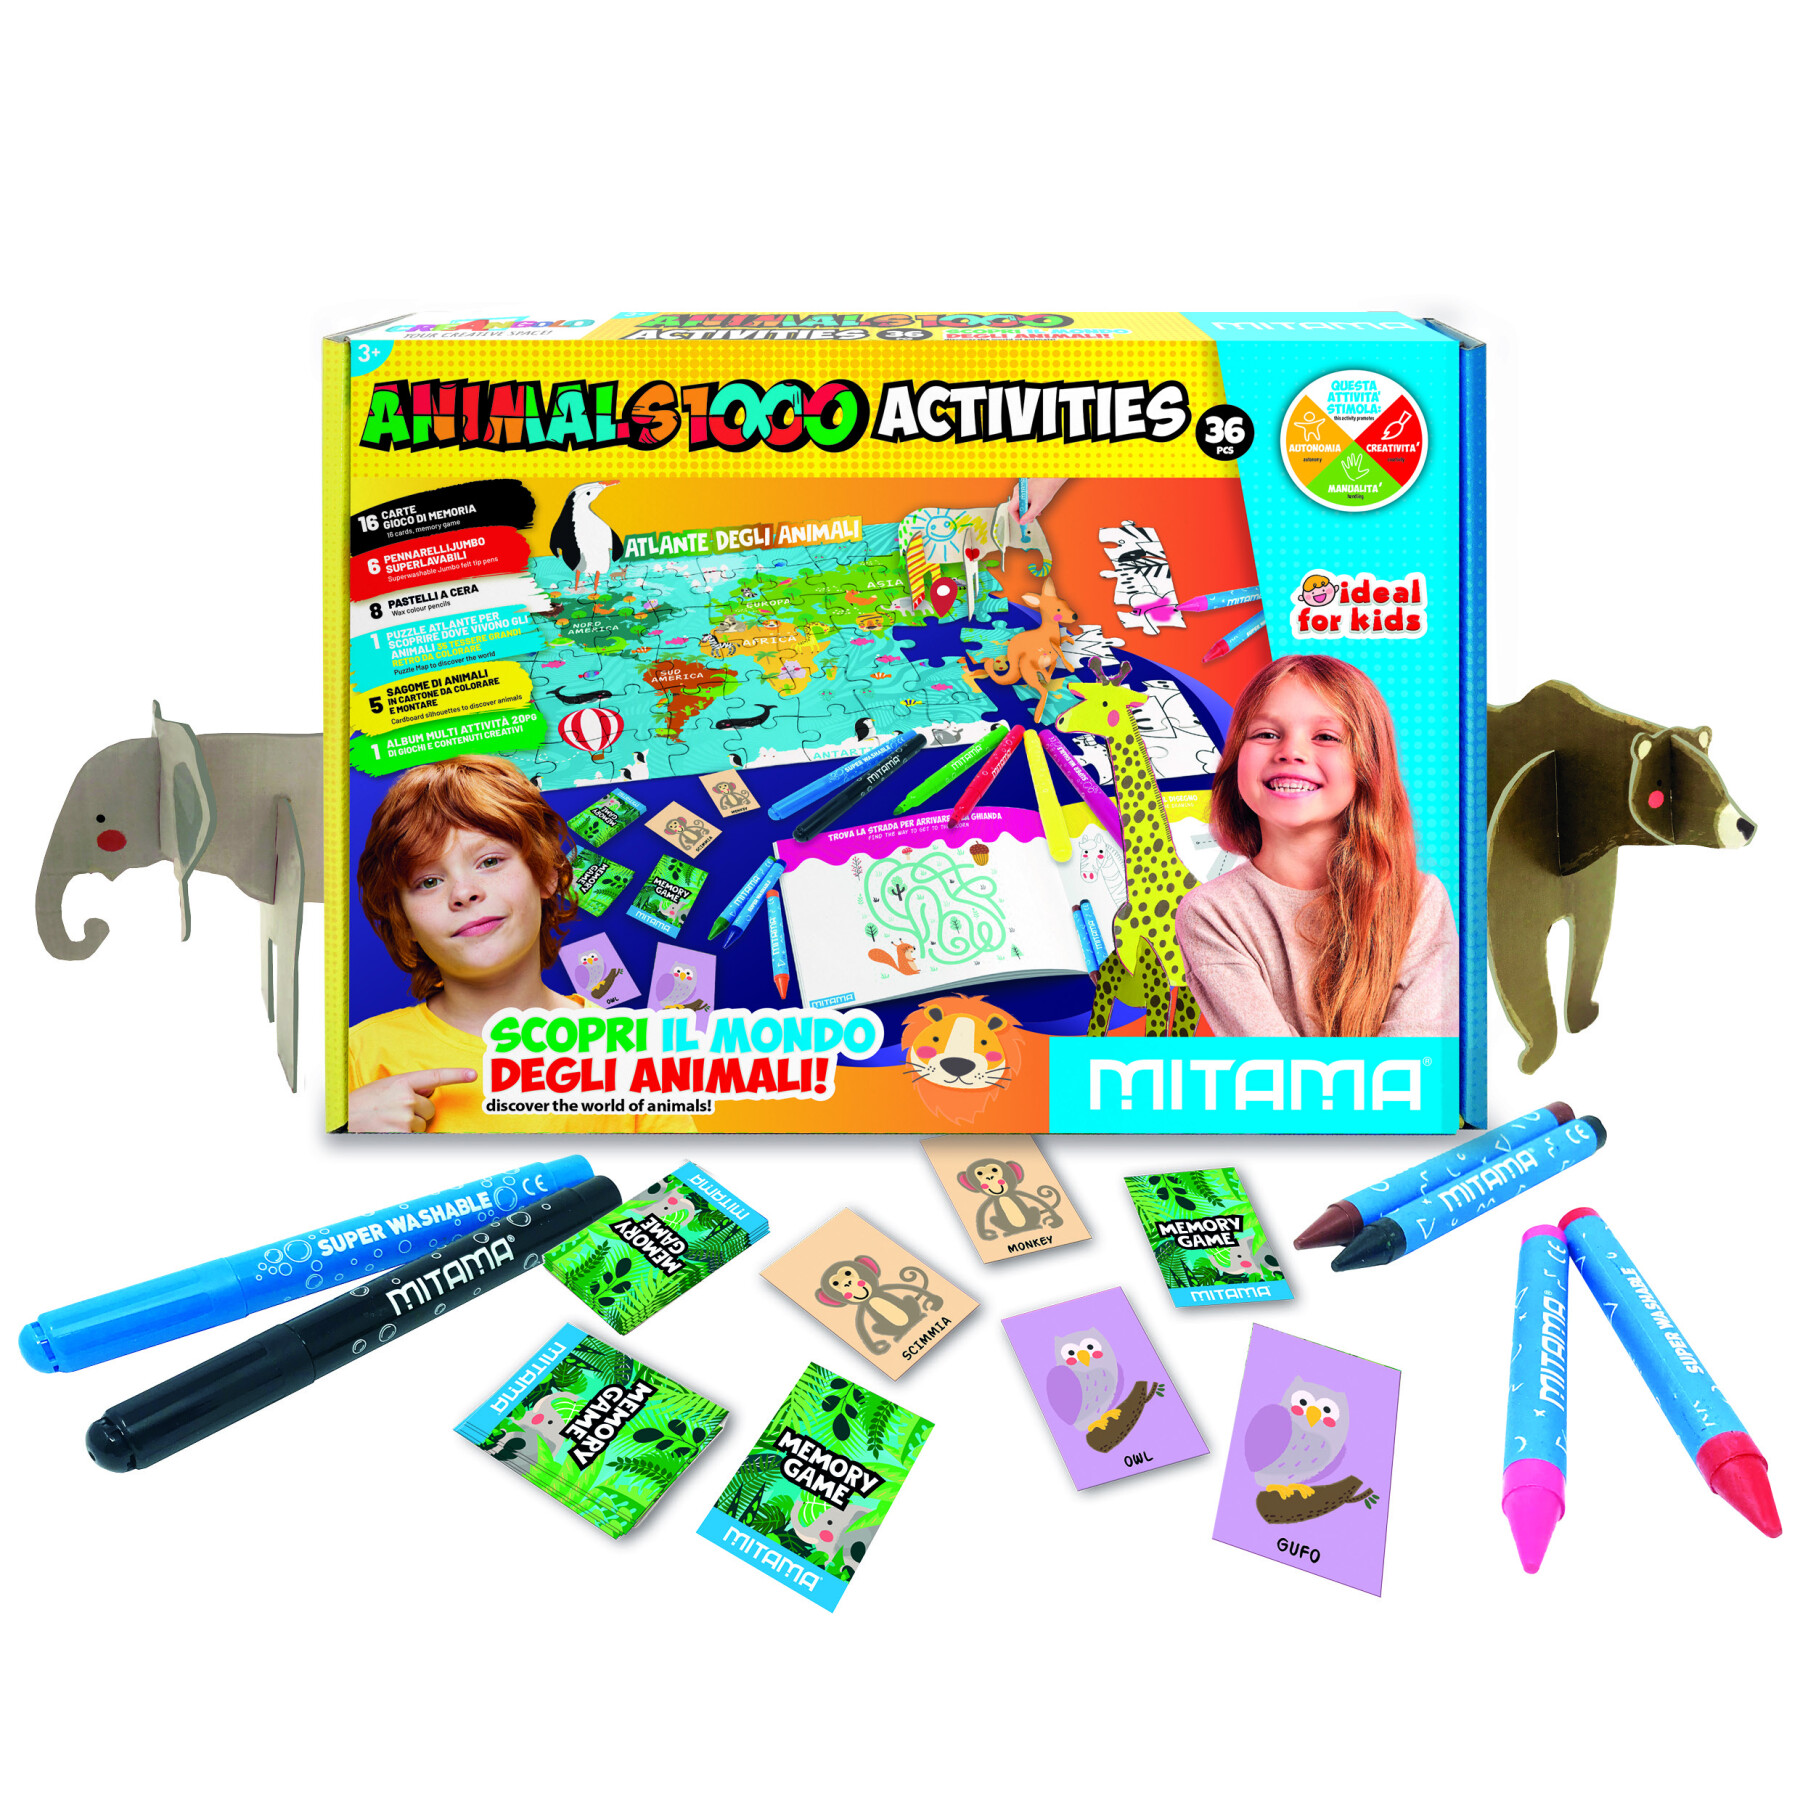 Jumbo animals 1000 activity mitama, scatola creativa con colori e giochi - 